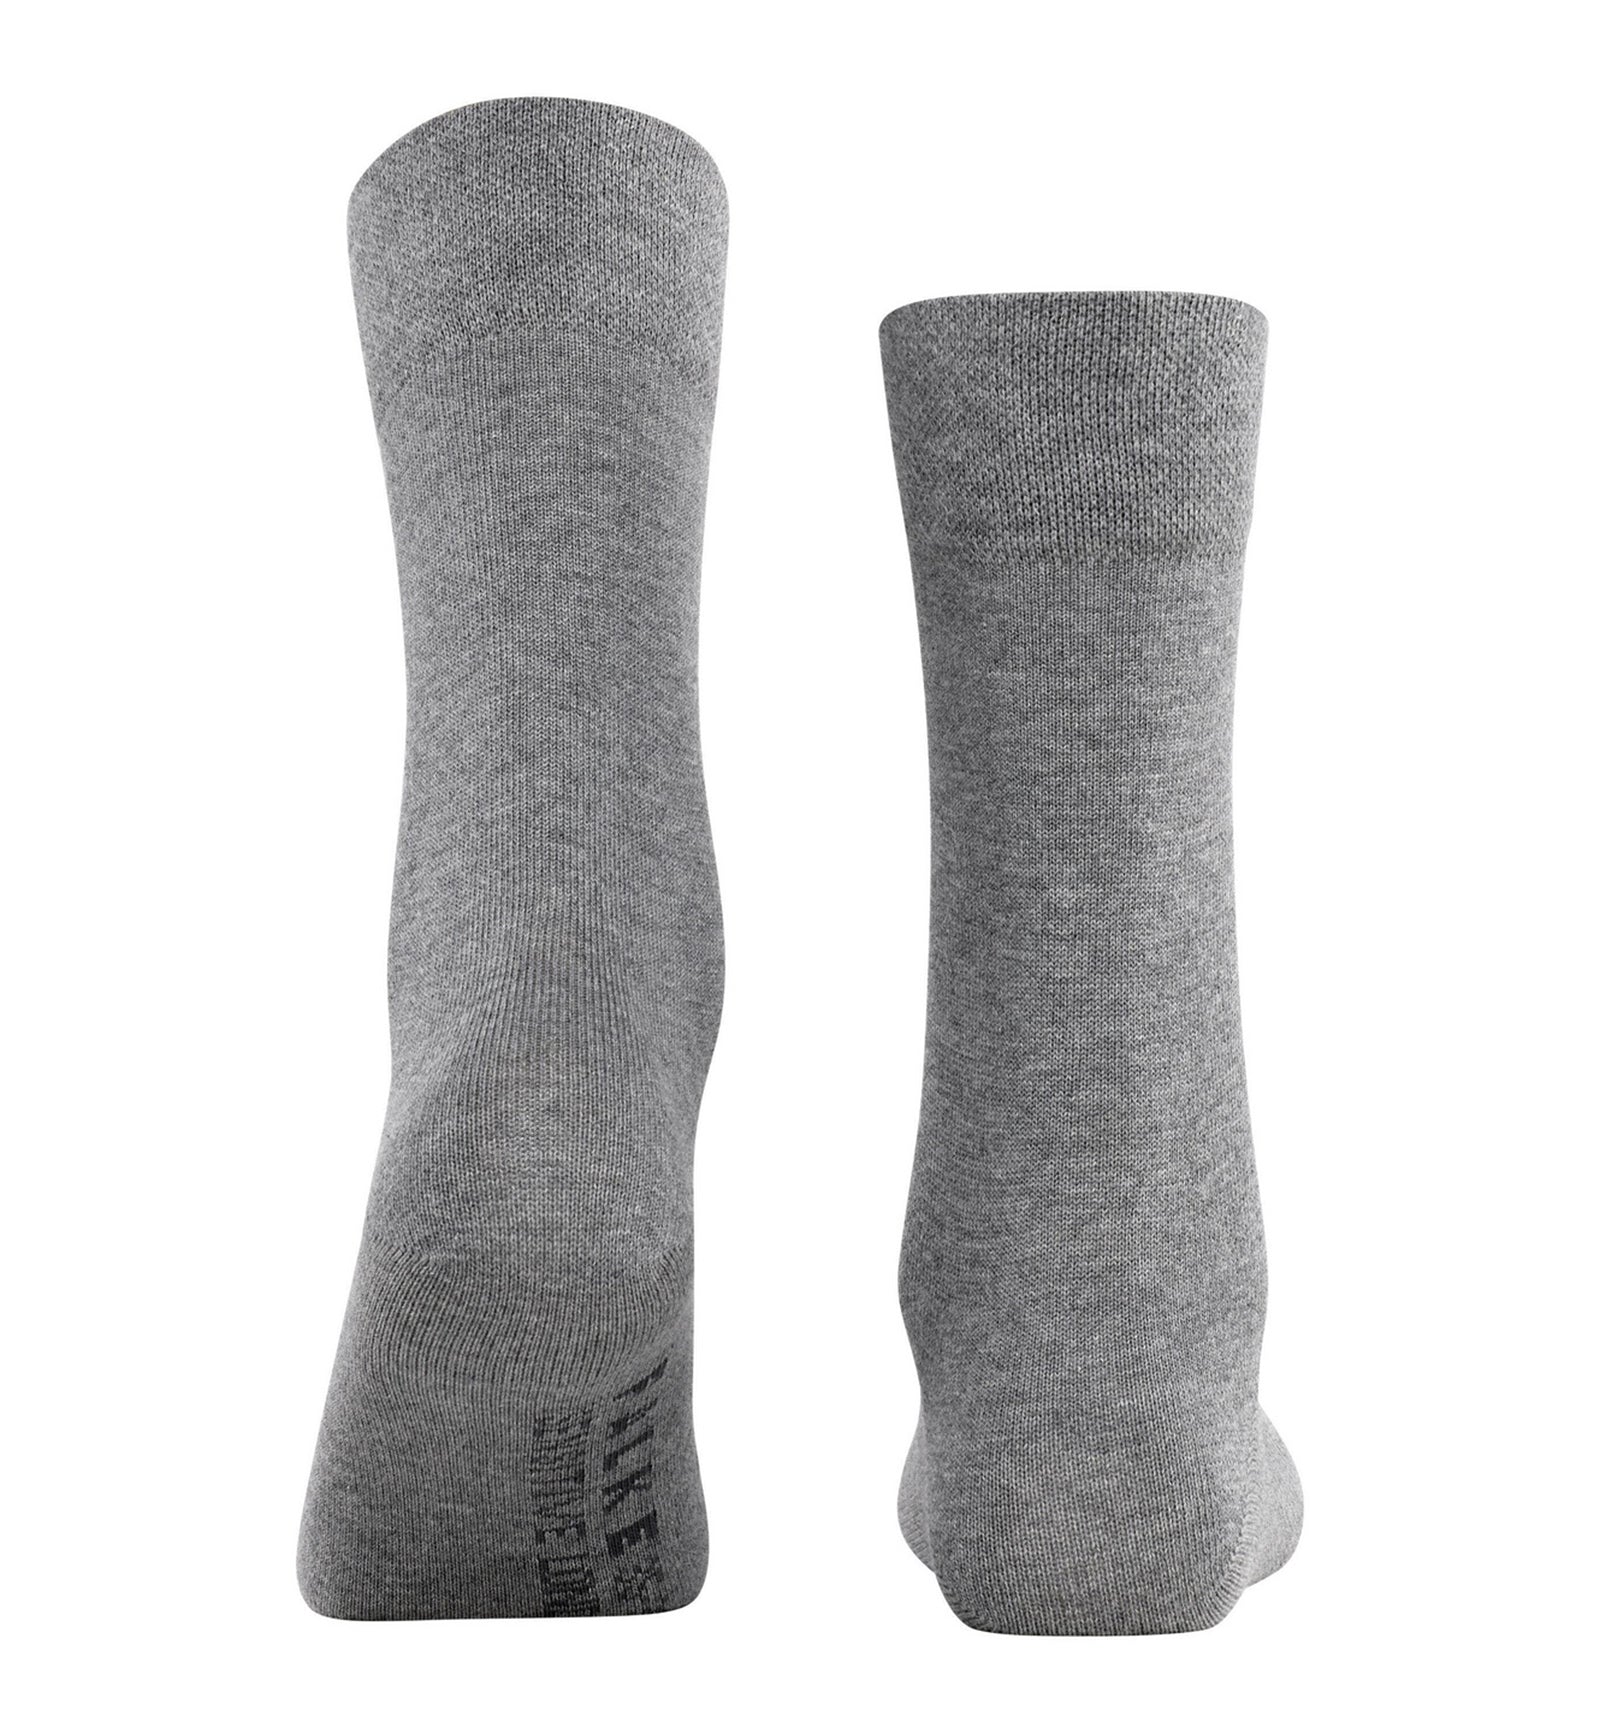 FALKE Sensitive London Crew Socks (46472),5/7.5,Light Grey Melange - Light Grey Melange,5/7.5